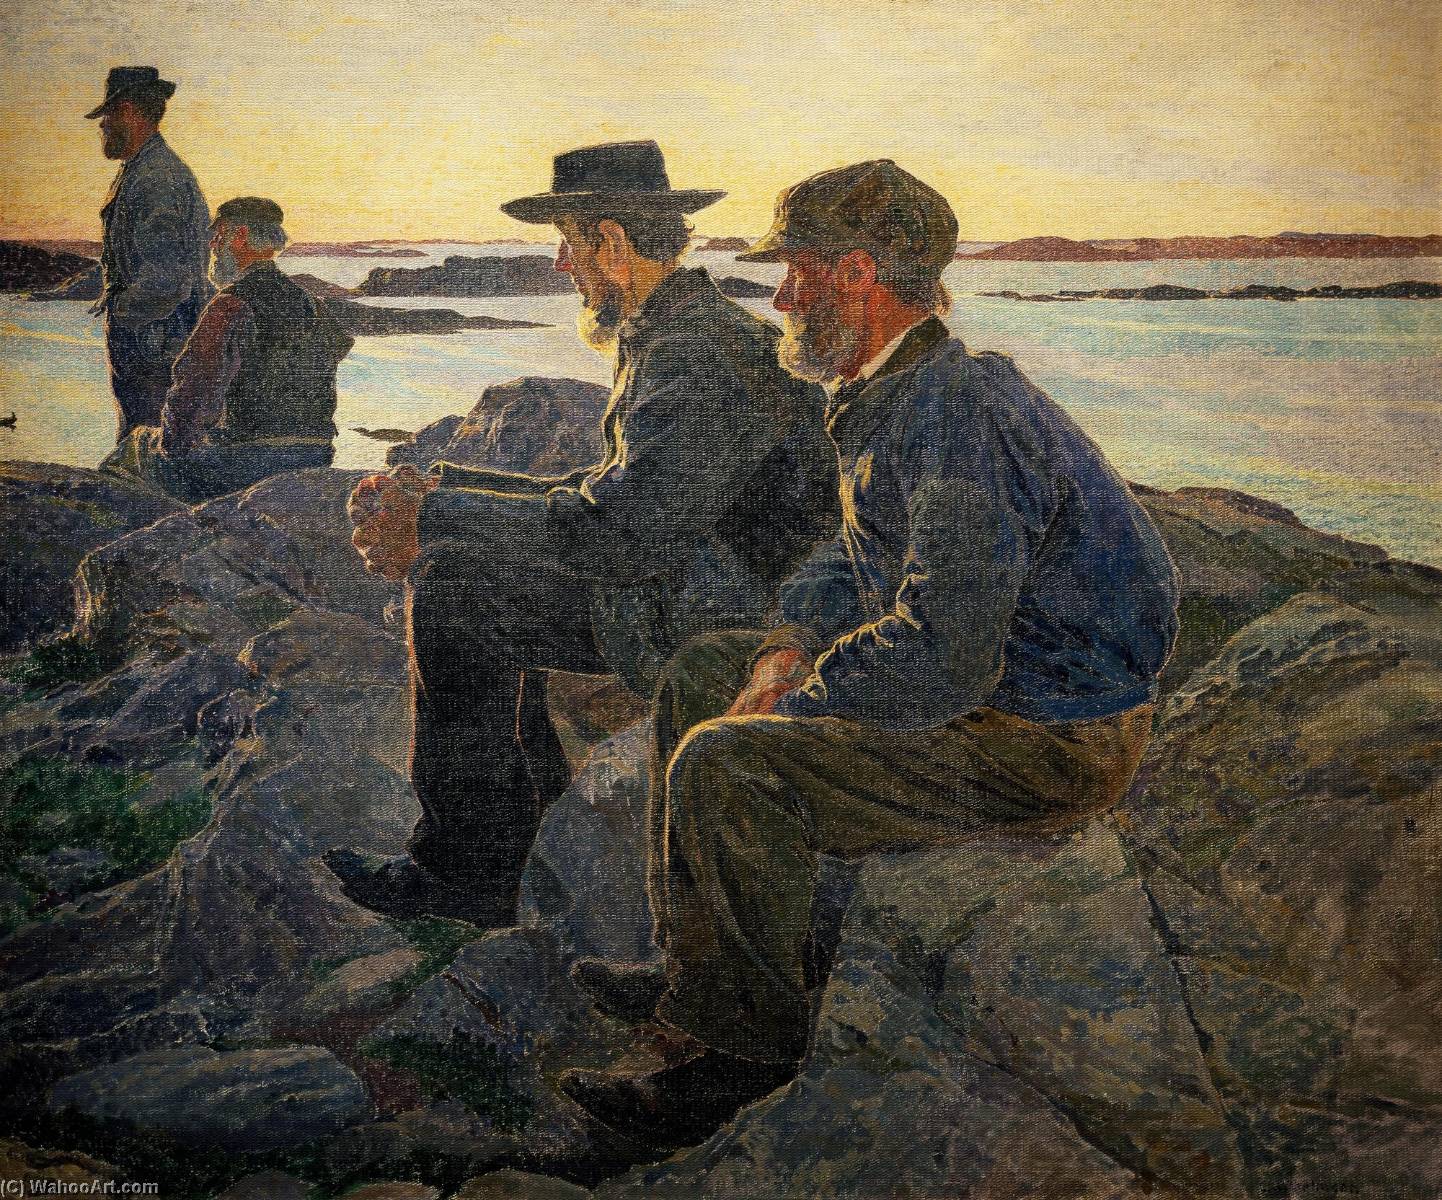 Comprar Reproducciones De Arte Del Museo On Rocks at Fiskebackskil, 1906 de Carl Wilhelmson (1866-1928) | ArtsDot.com